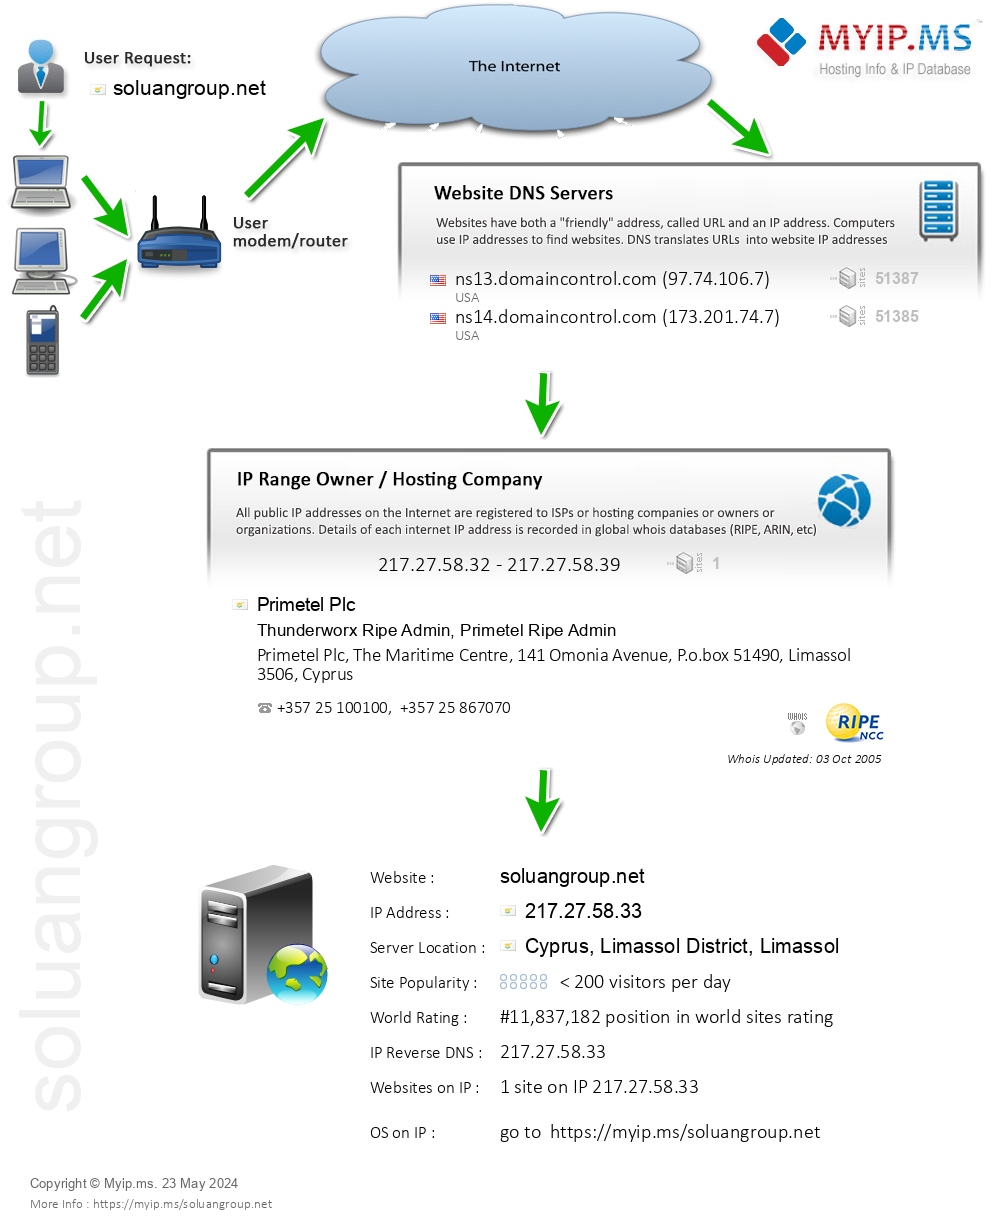 Soluangroup.net - Website Hosting Visual IP Diagram